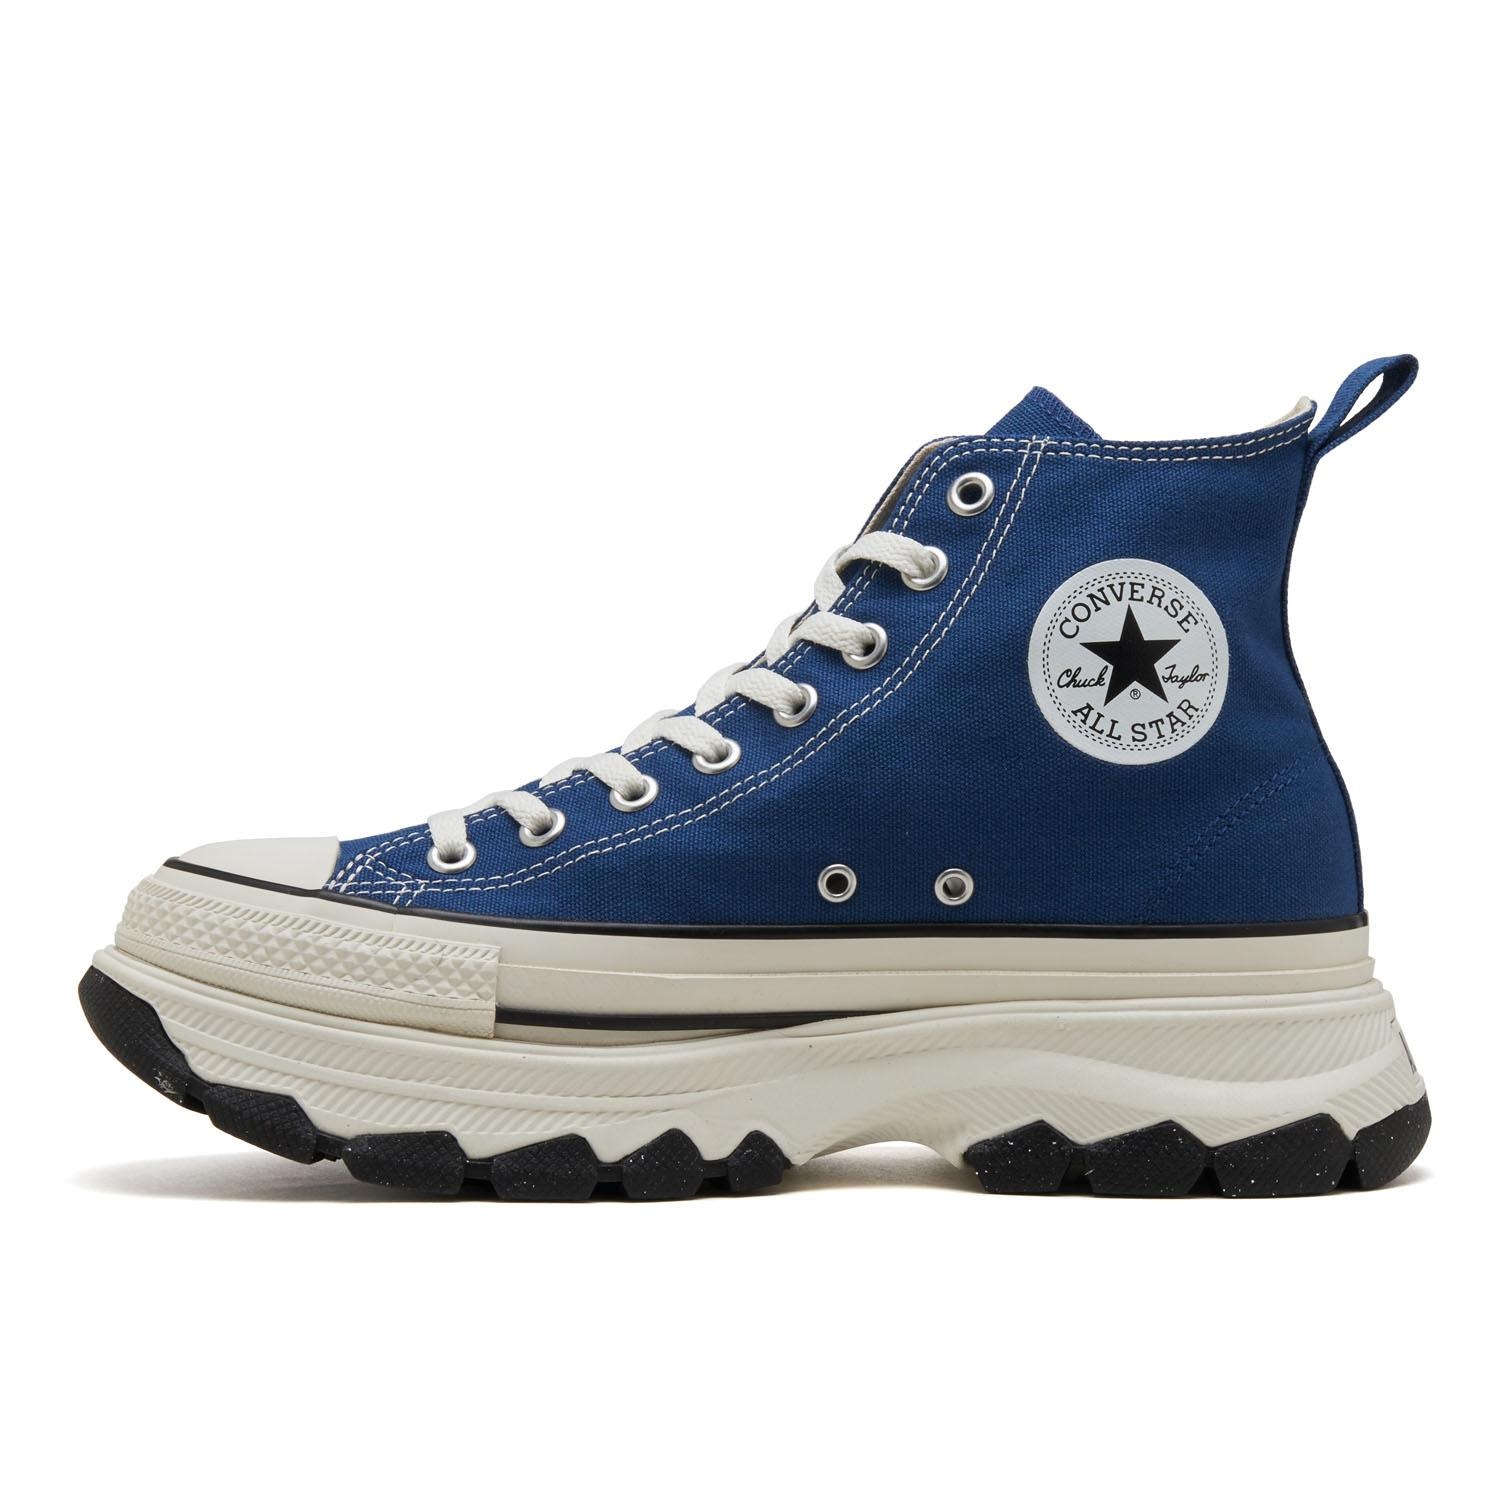 結帳再享97折✨日本限定 Converse ALL STAR 高筒帆布鞋